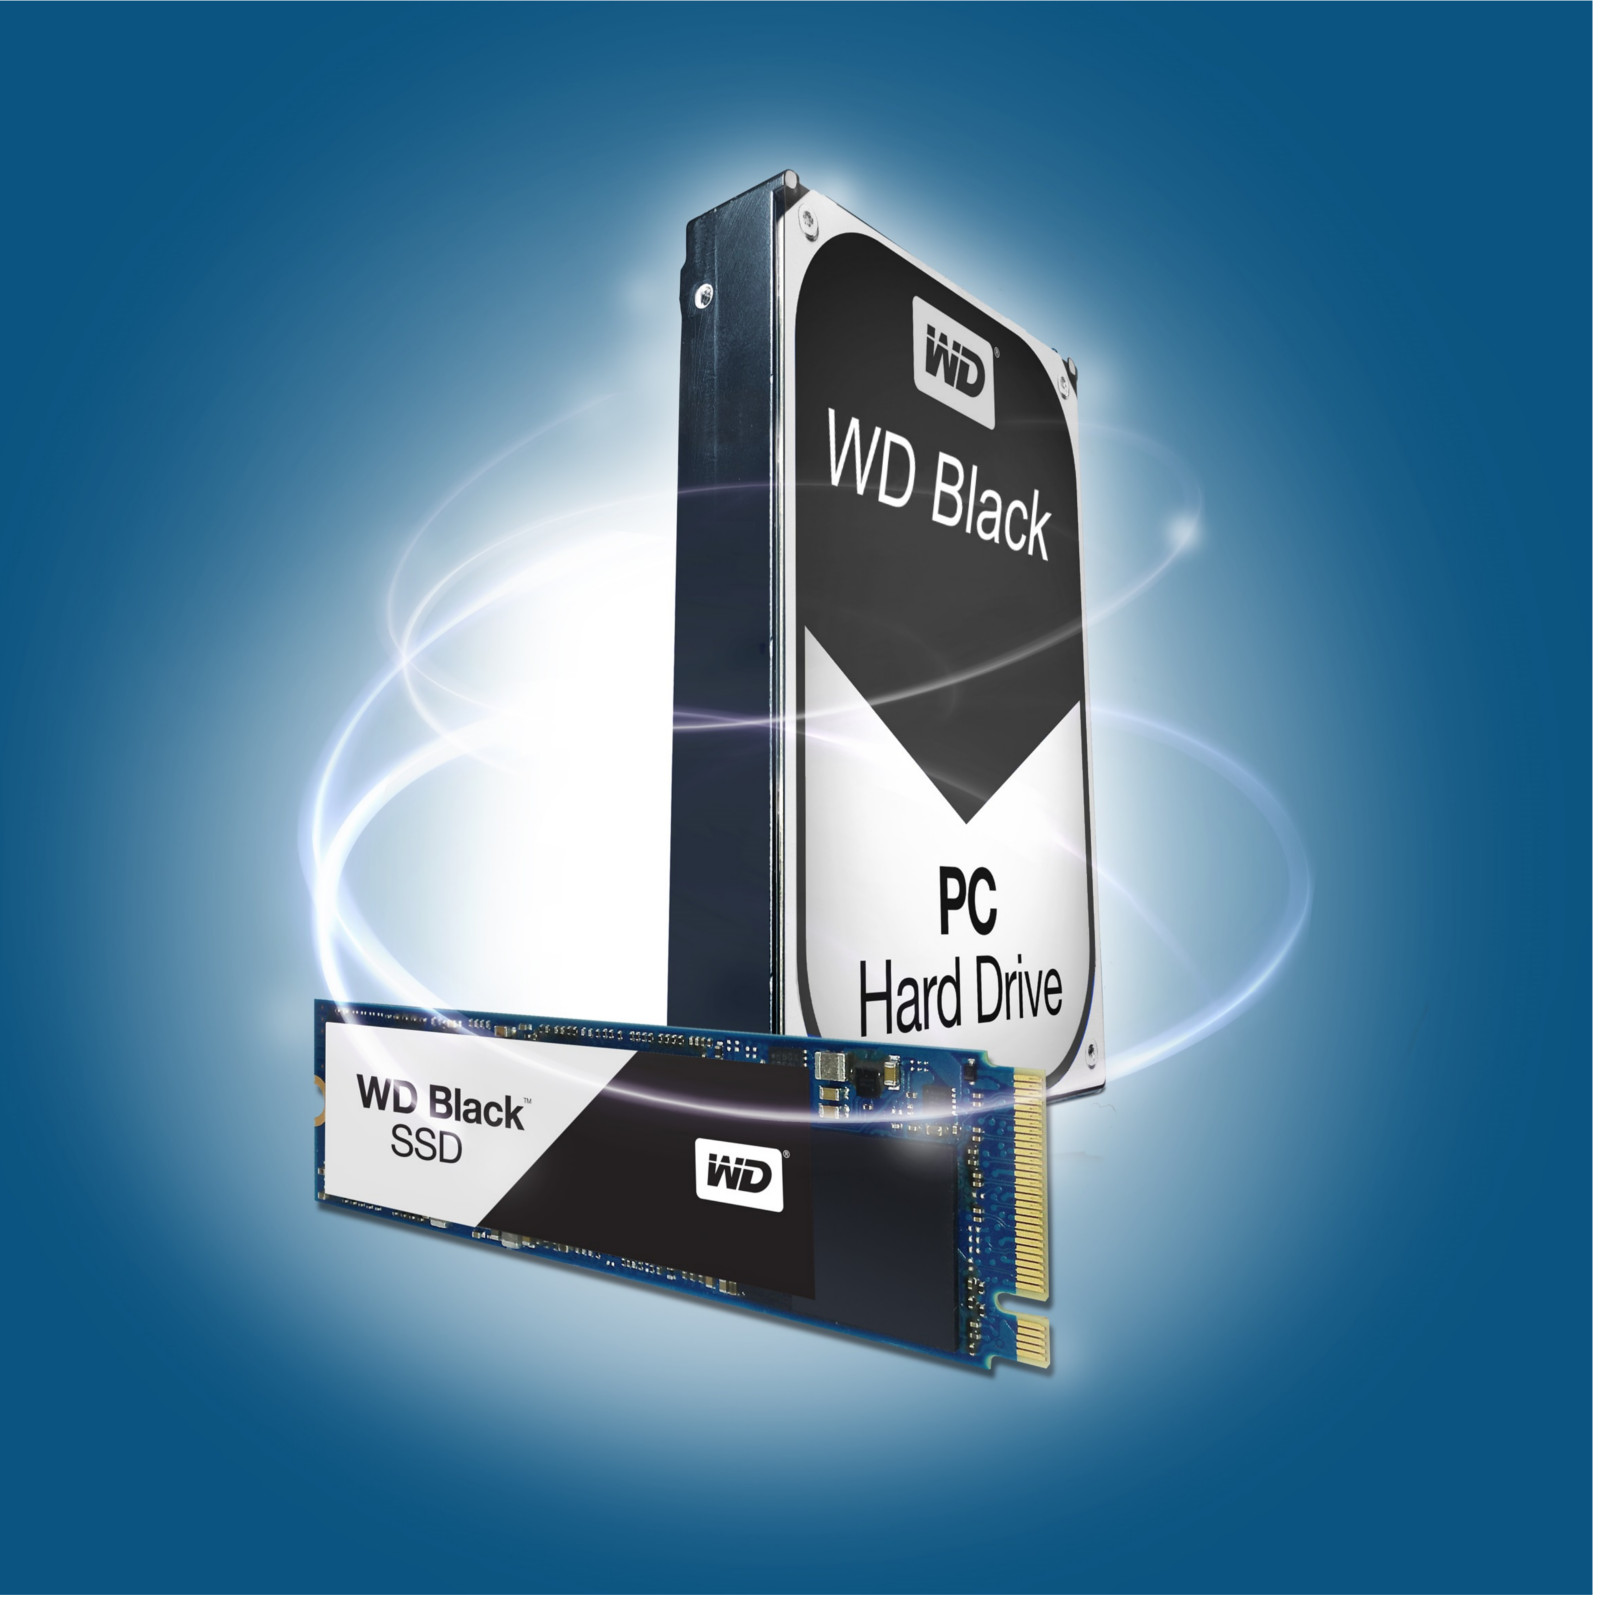 WD - WD Black 250GB M.2 SSD  1TB Performance HDD Bundle